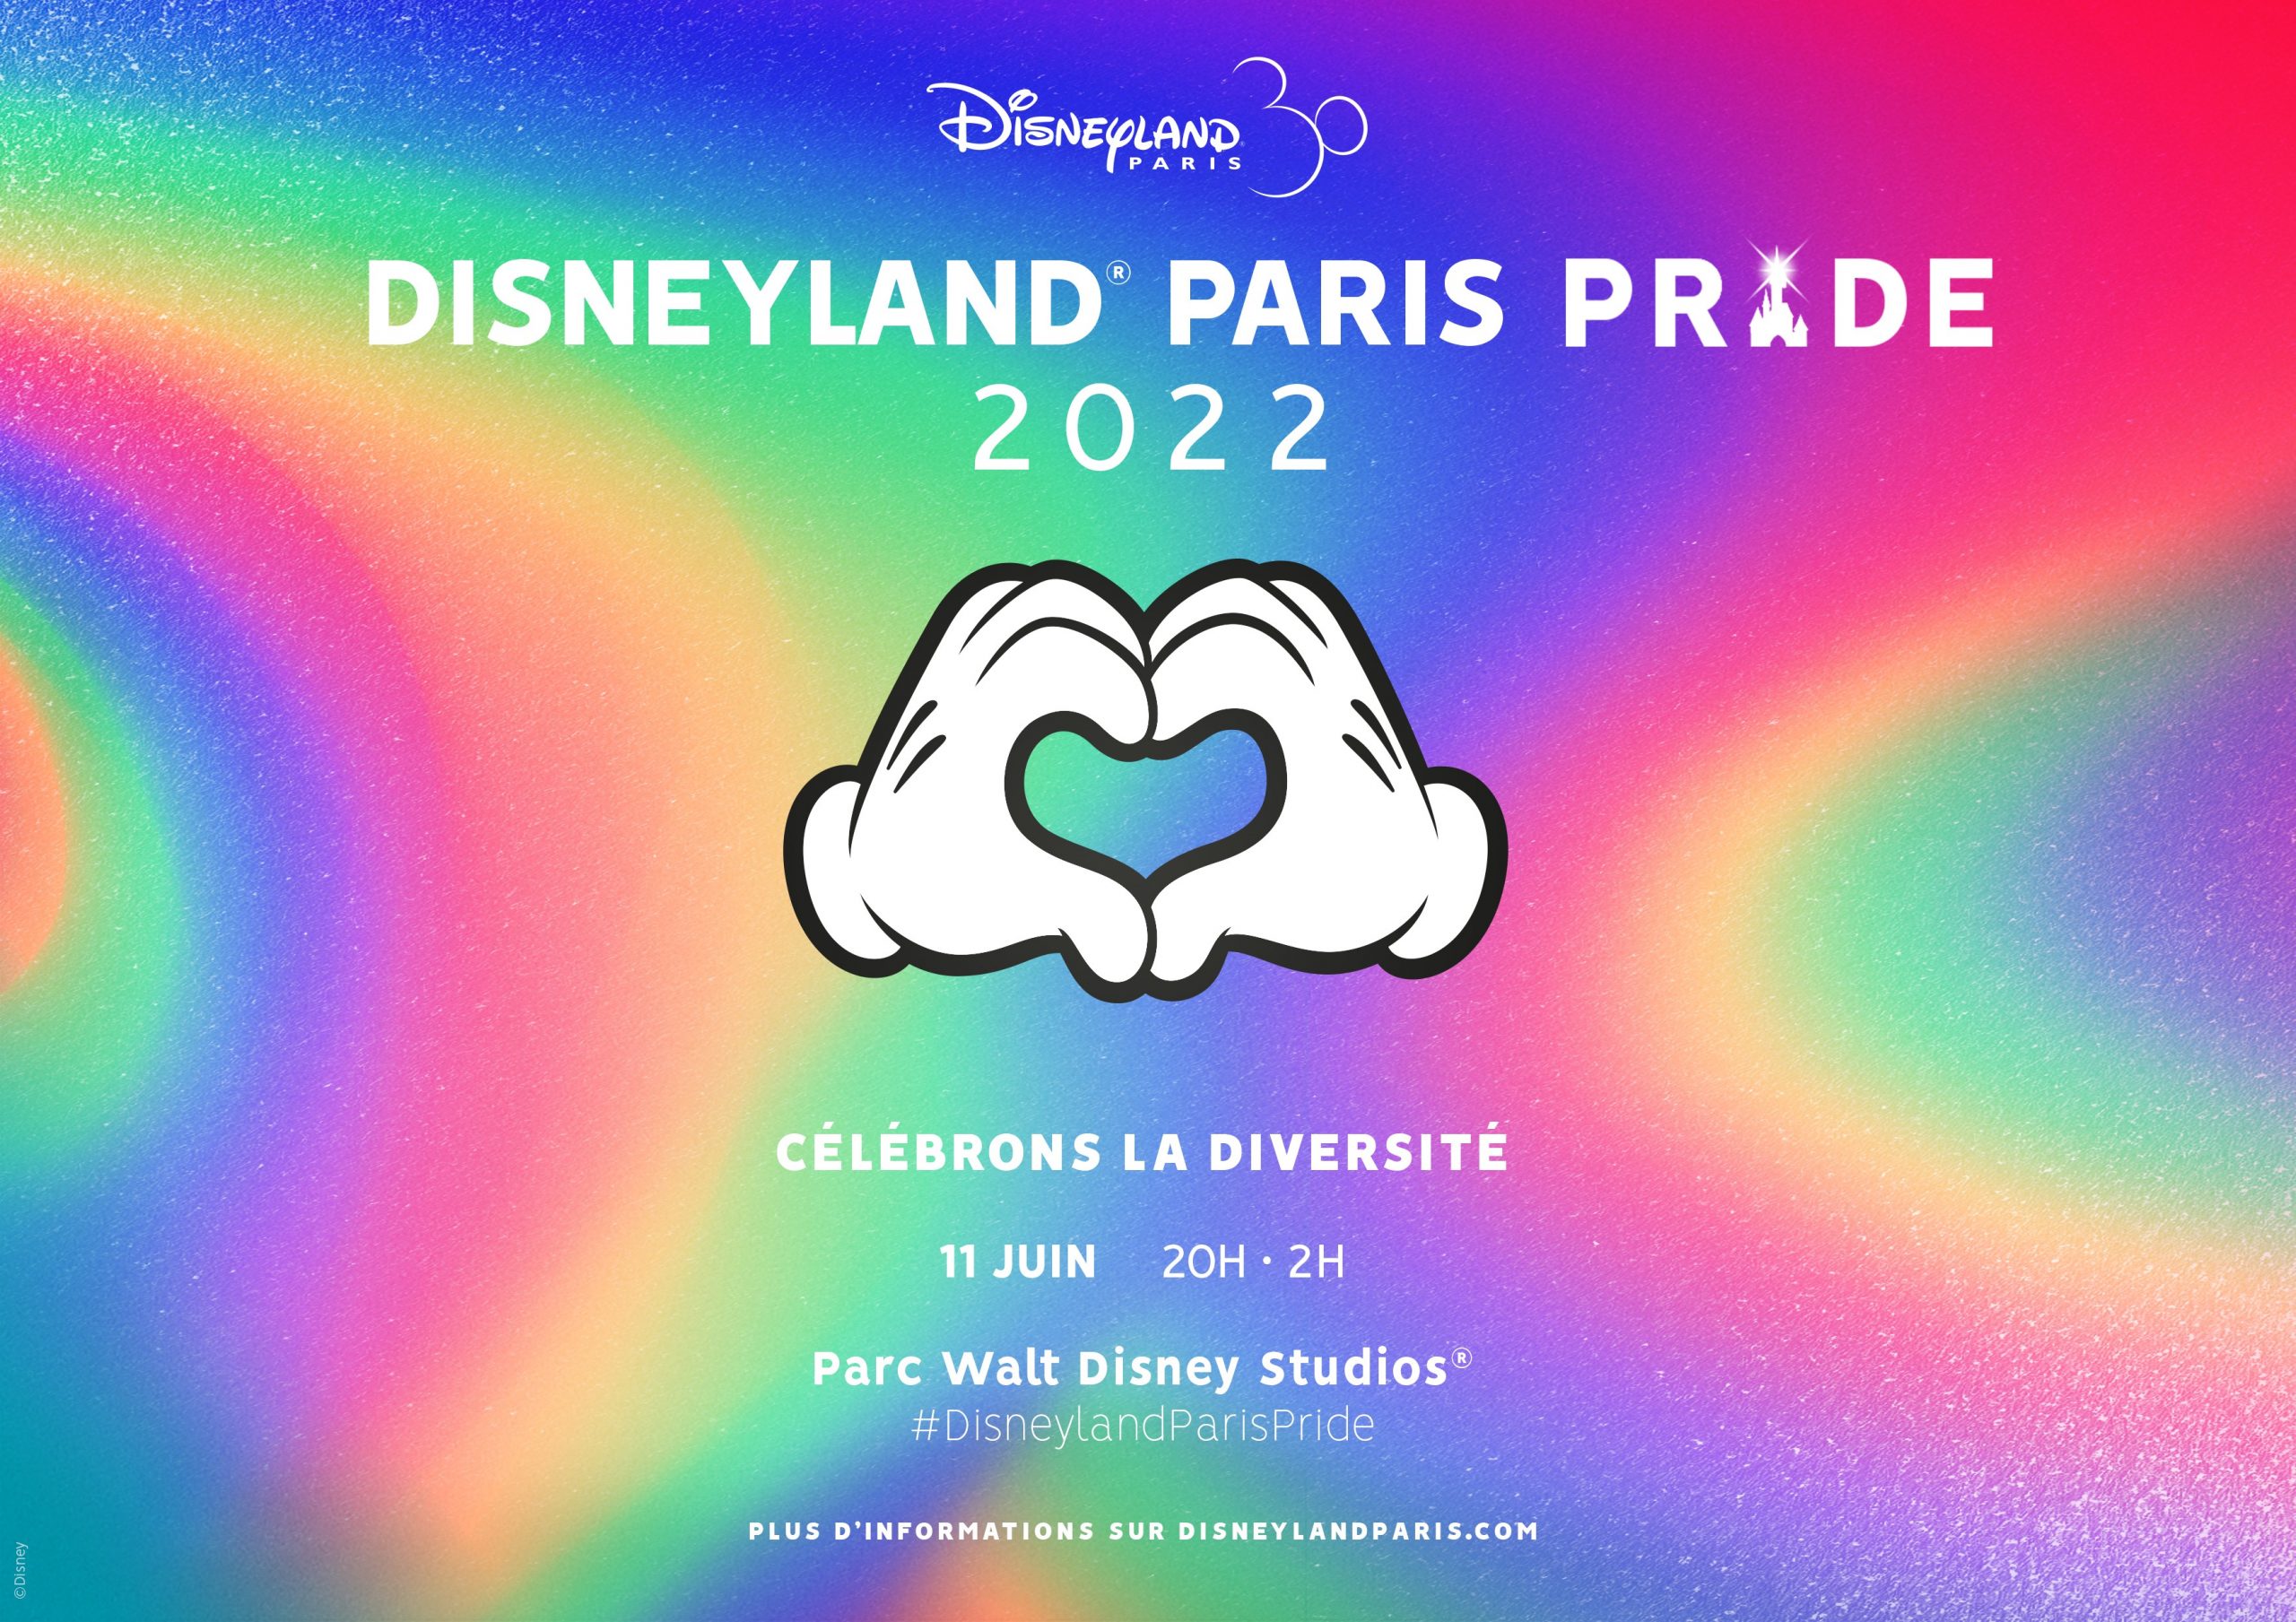 Disneyland Paris Pride revient le 11 juin 2022 pour célébrer la diversité